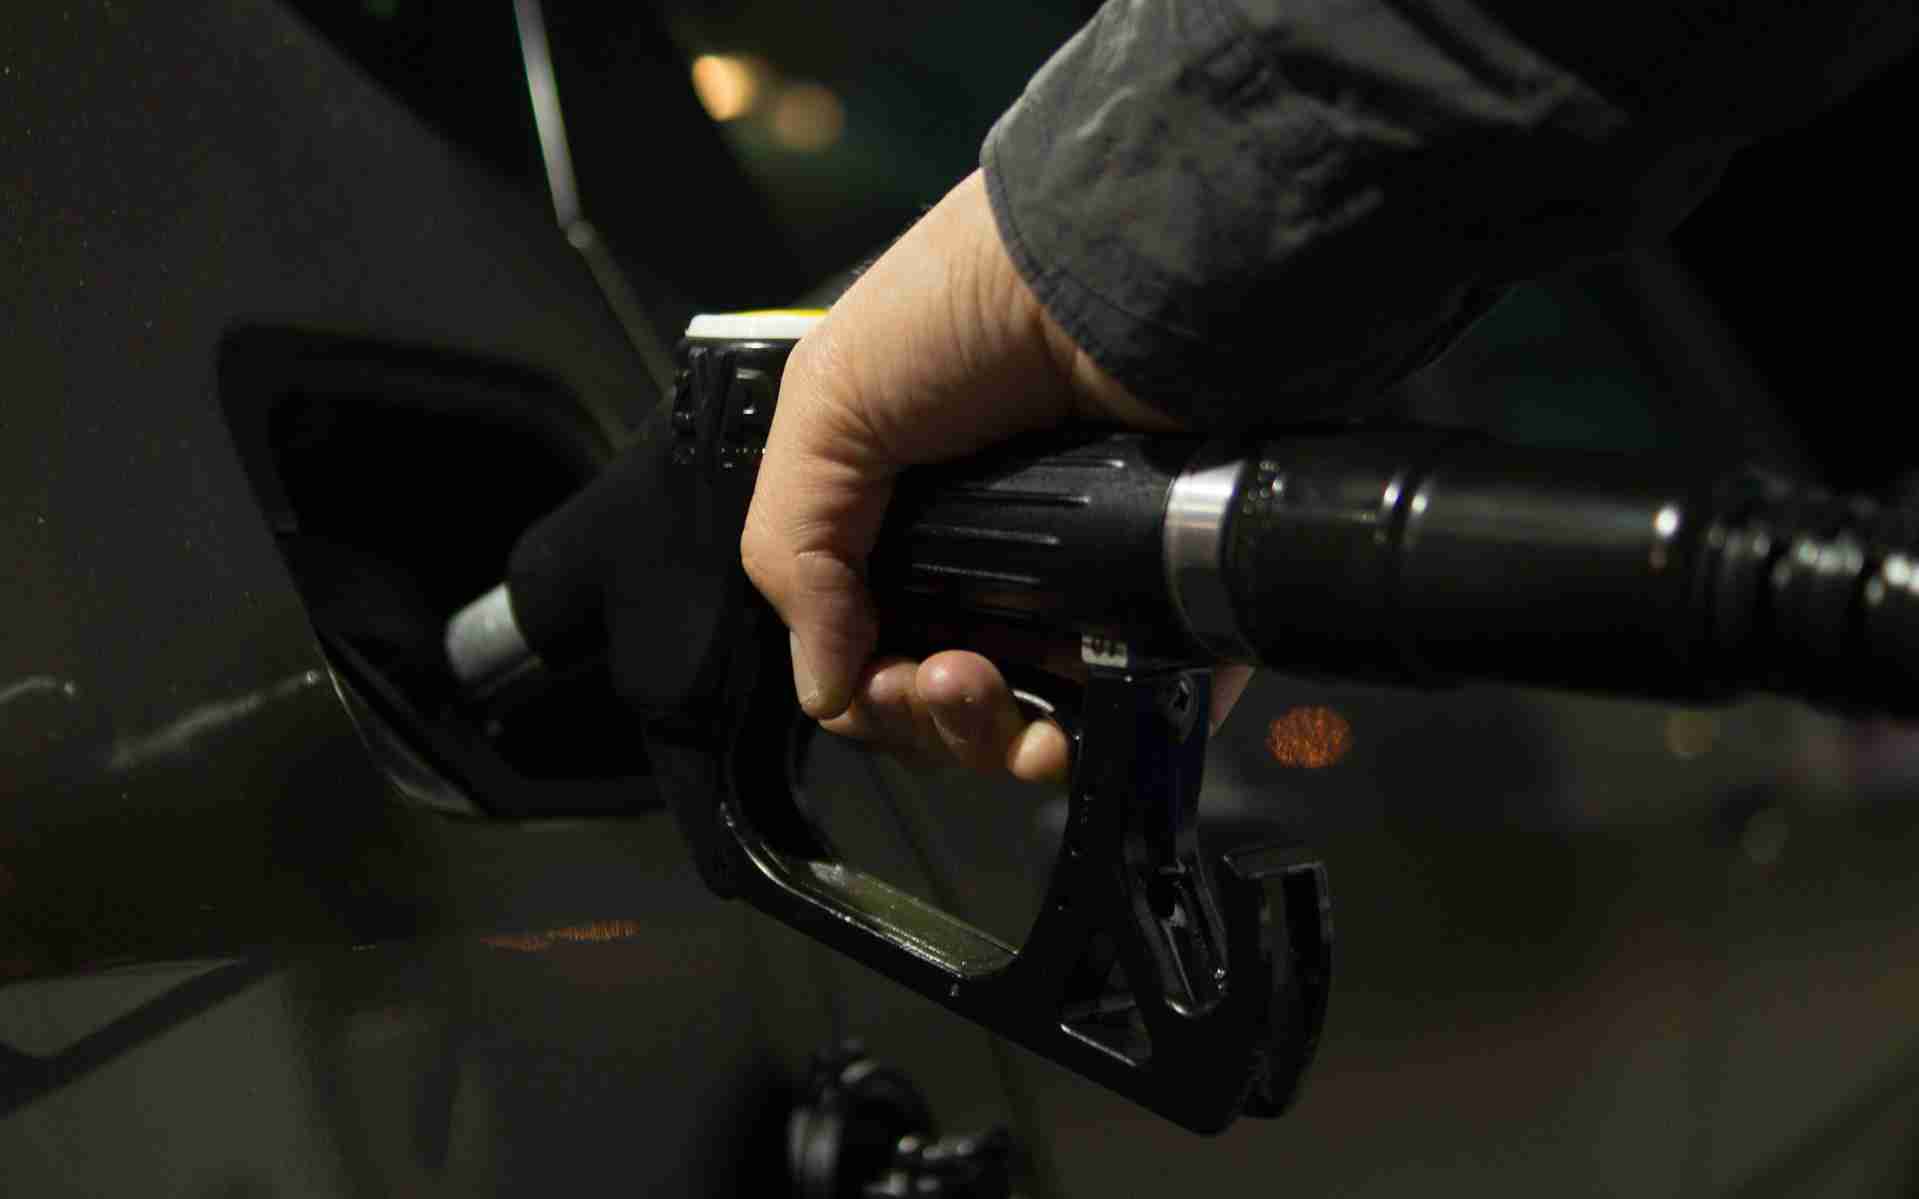 Ceny benzínu a nafty opět letí nahoru. Zdražování pohonných hmot nekončí